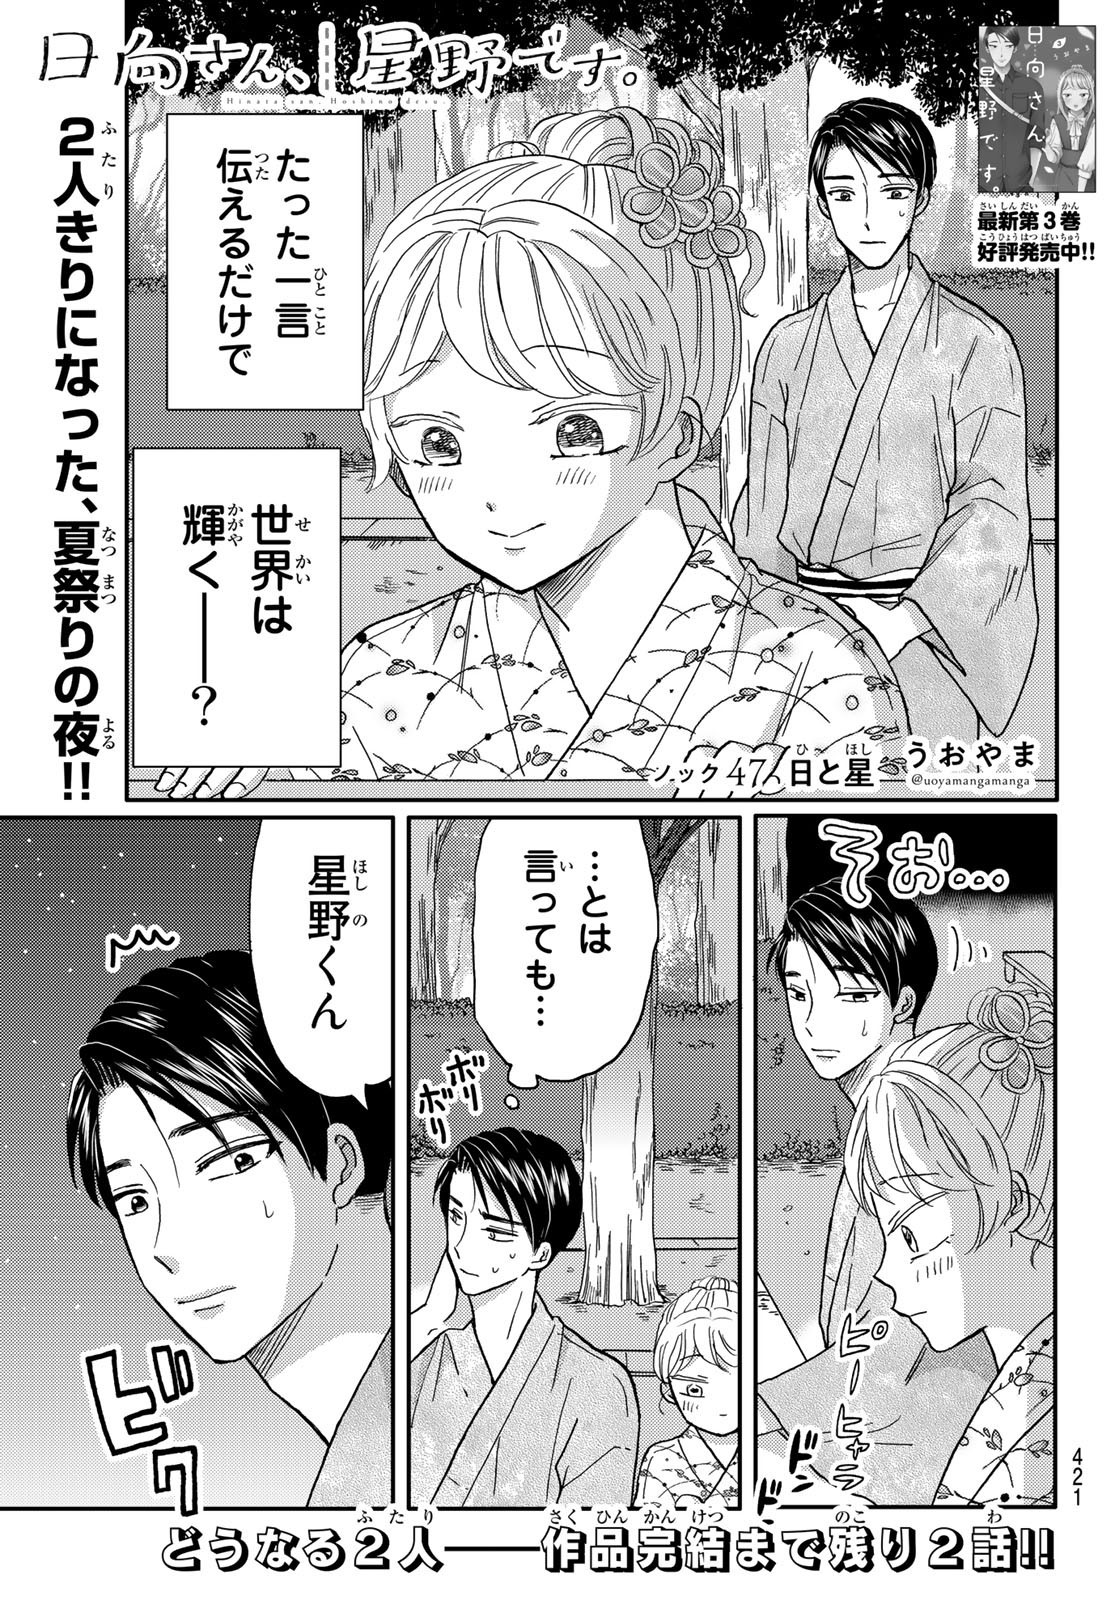 Hinata-san, Hoshino desu. - Chapter 047 - Page 1